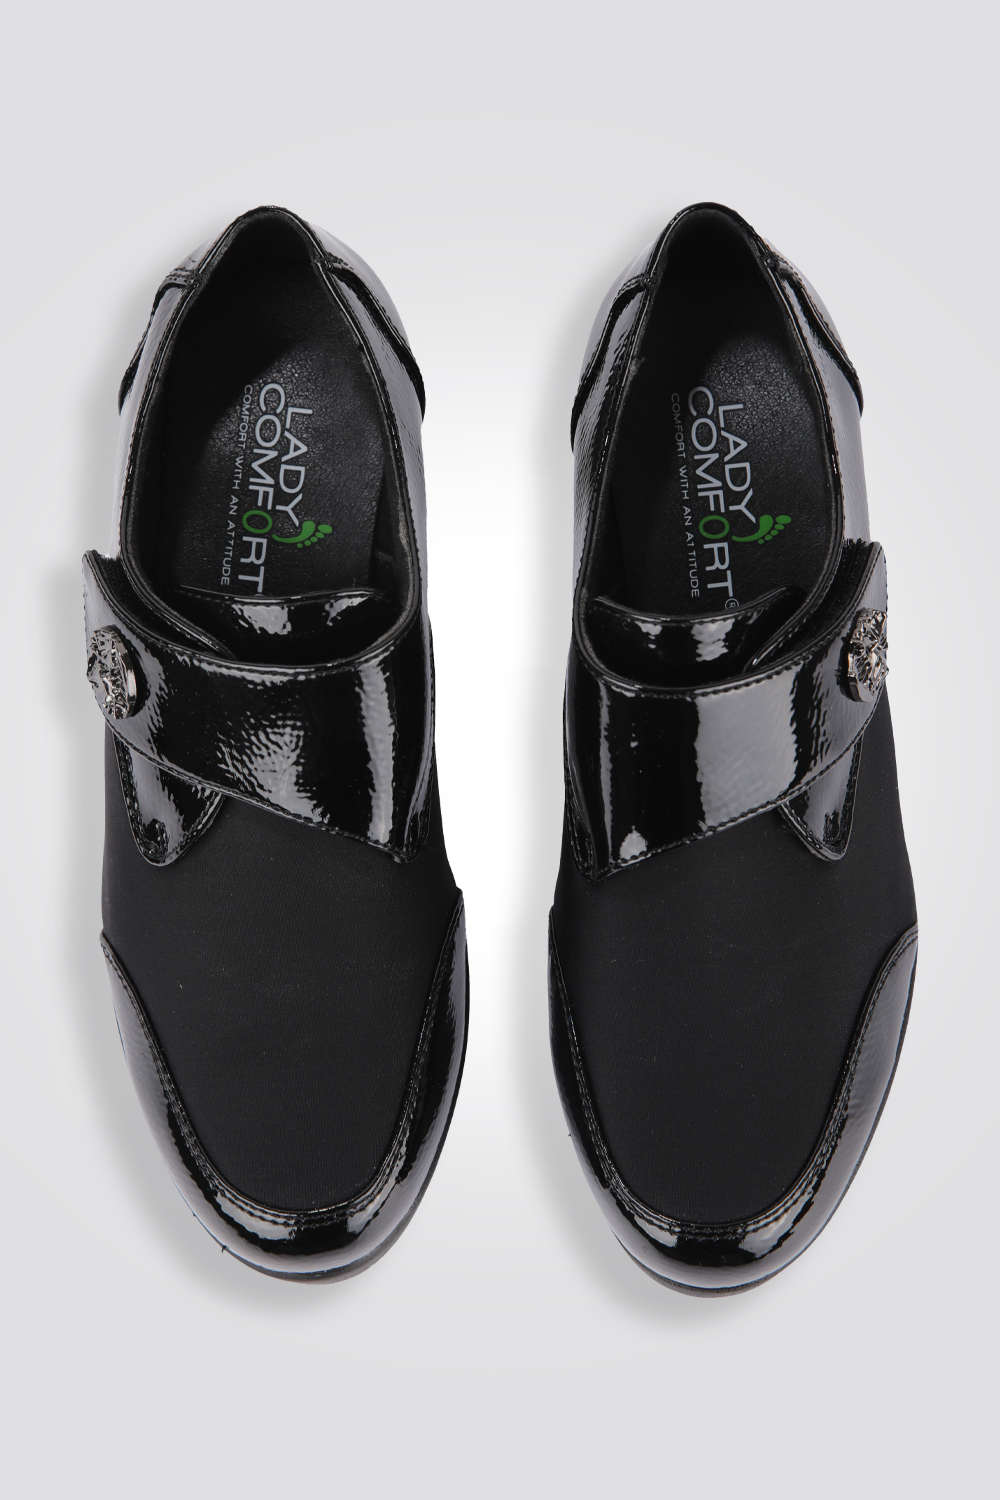 נעל נפלק עם סקוטצ אבזם דמוי עור בצבע שחור